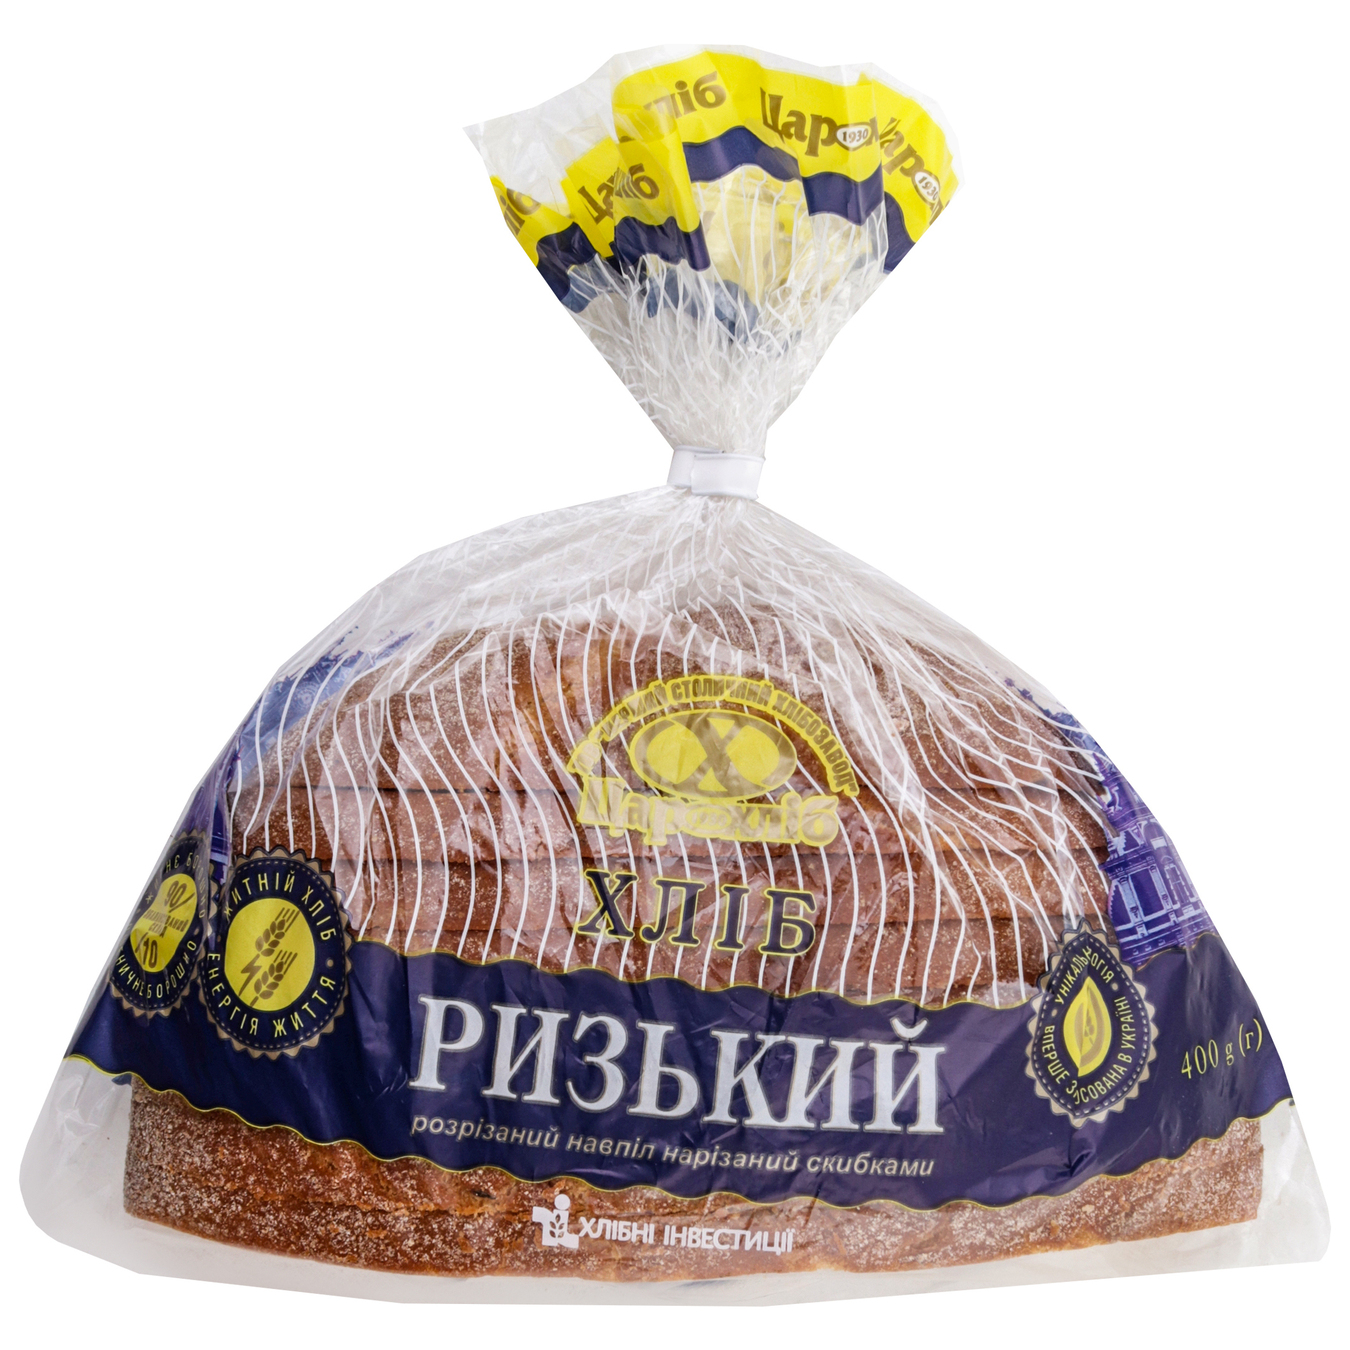 Хлеб Царь хлеб Рижский разрезанный пополам нарезанный упакован 400г 2